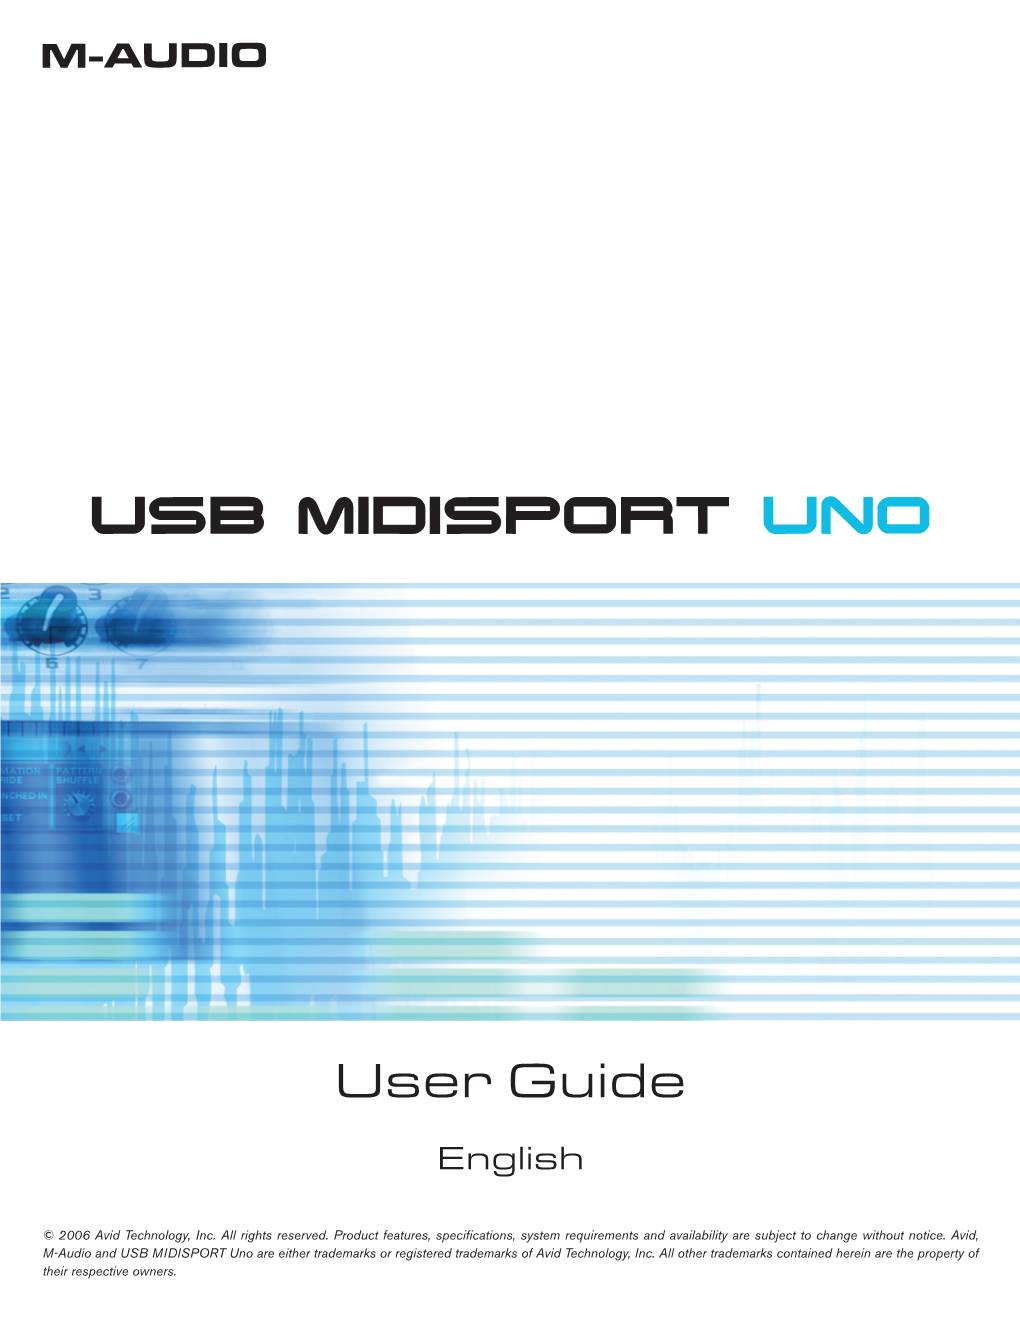 USB MIDISPORT Uno User's Guide